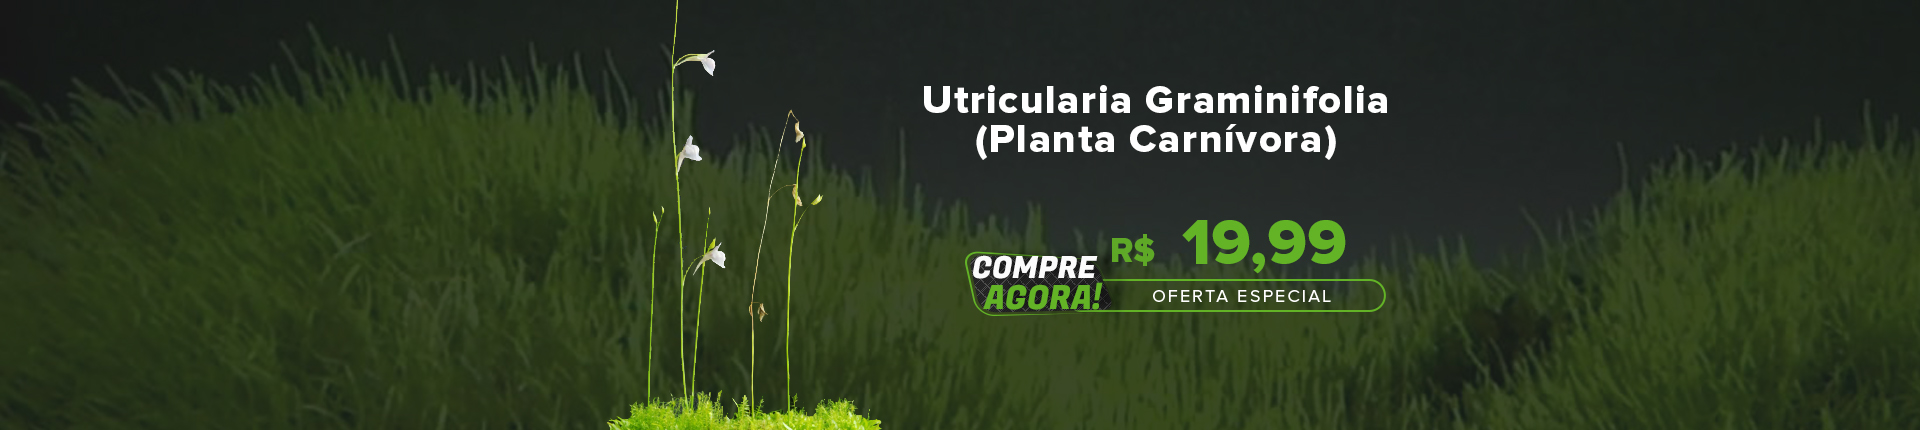 Utricularia Graminifolia